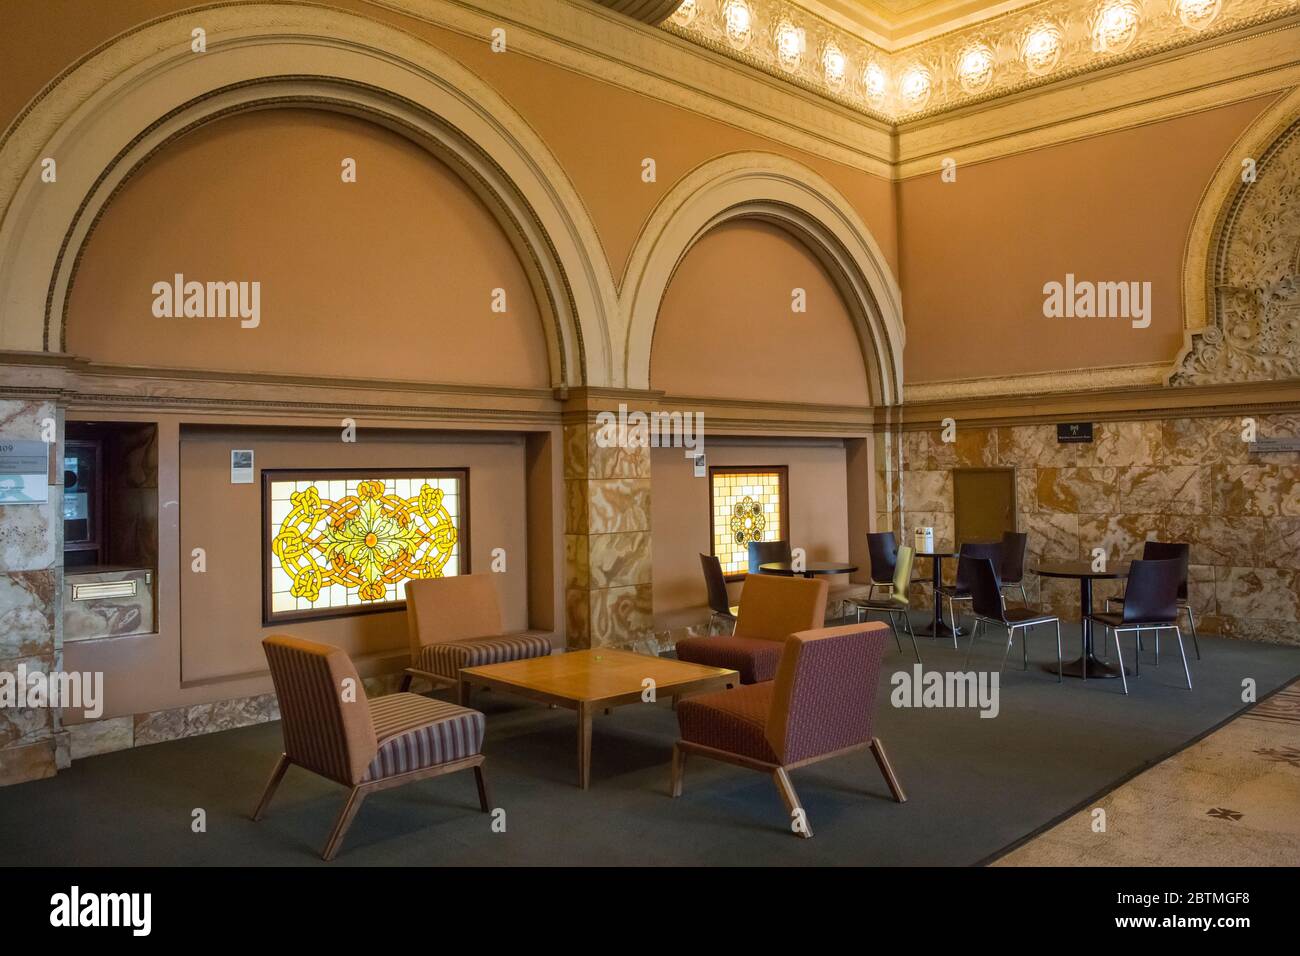 Immagine orizzontale della sala dell'Auditorium Building con i suoi mobili e la decorazione in vetro colorato, Chicago, Illinois, USA Foto Stock